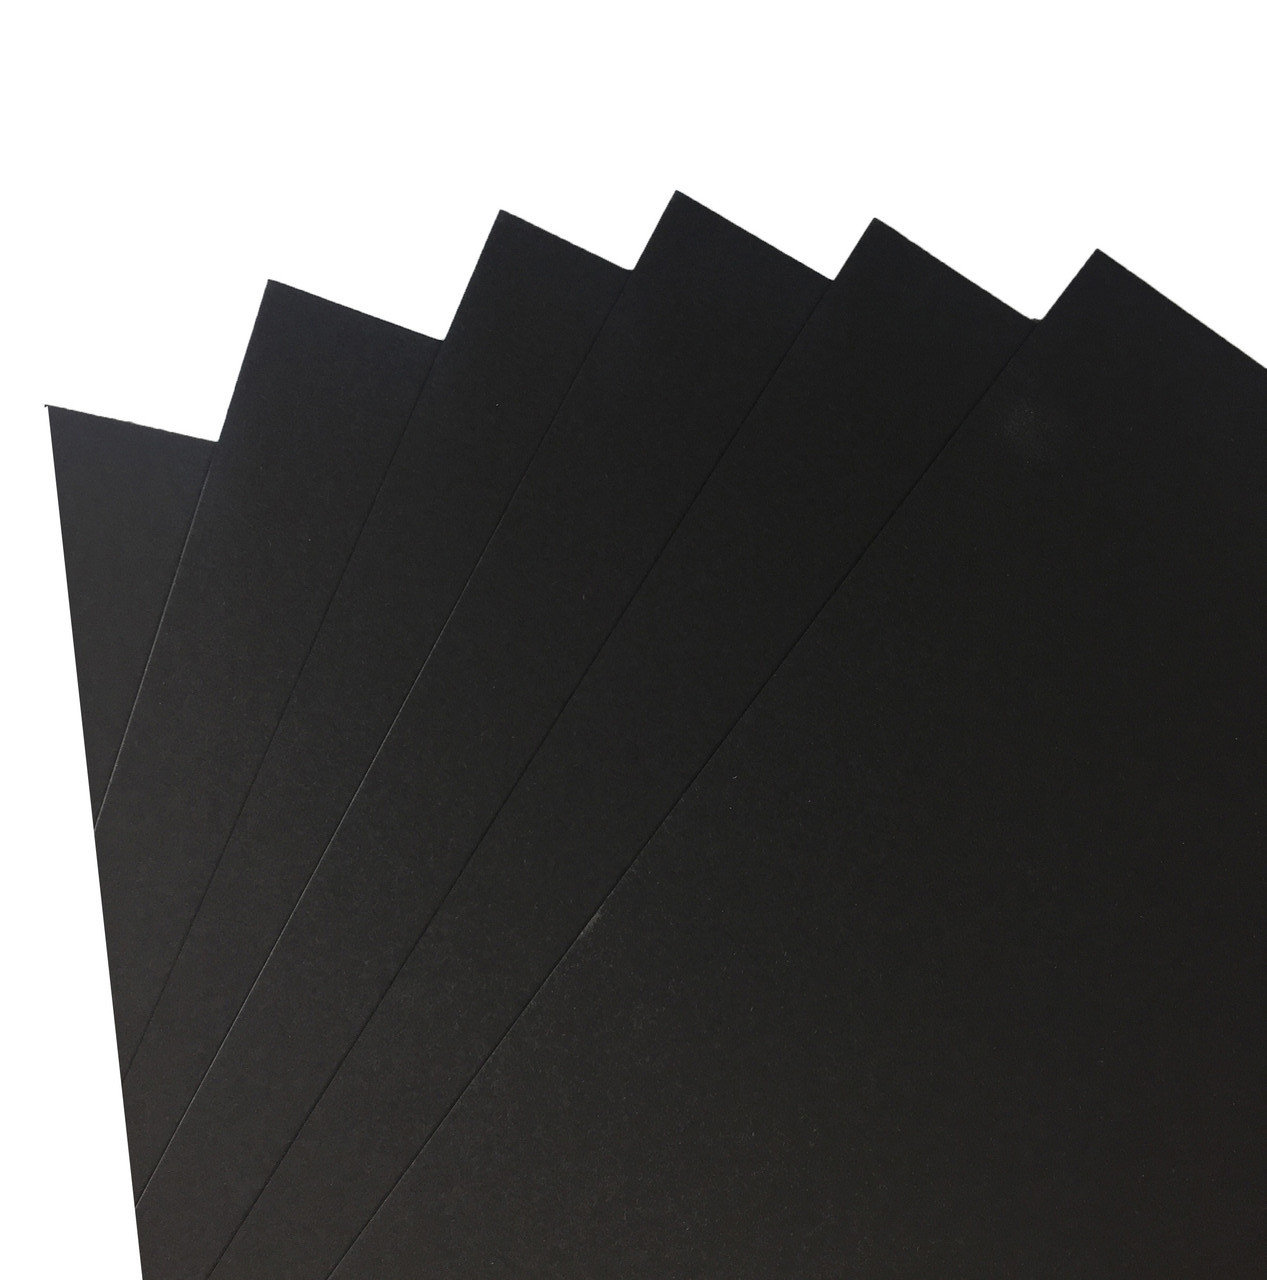 Бумага цветная Folia 50х70 см 300 г, черный бумага миллиметровая 20 листов а4